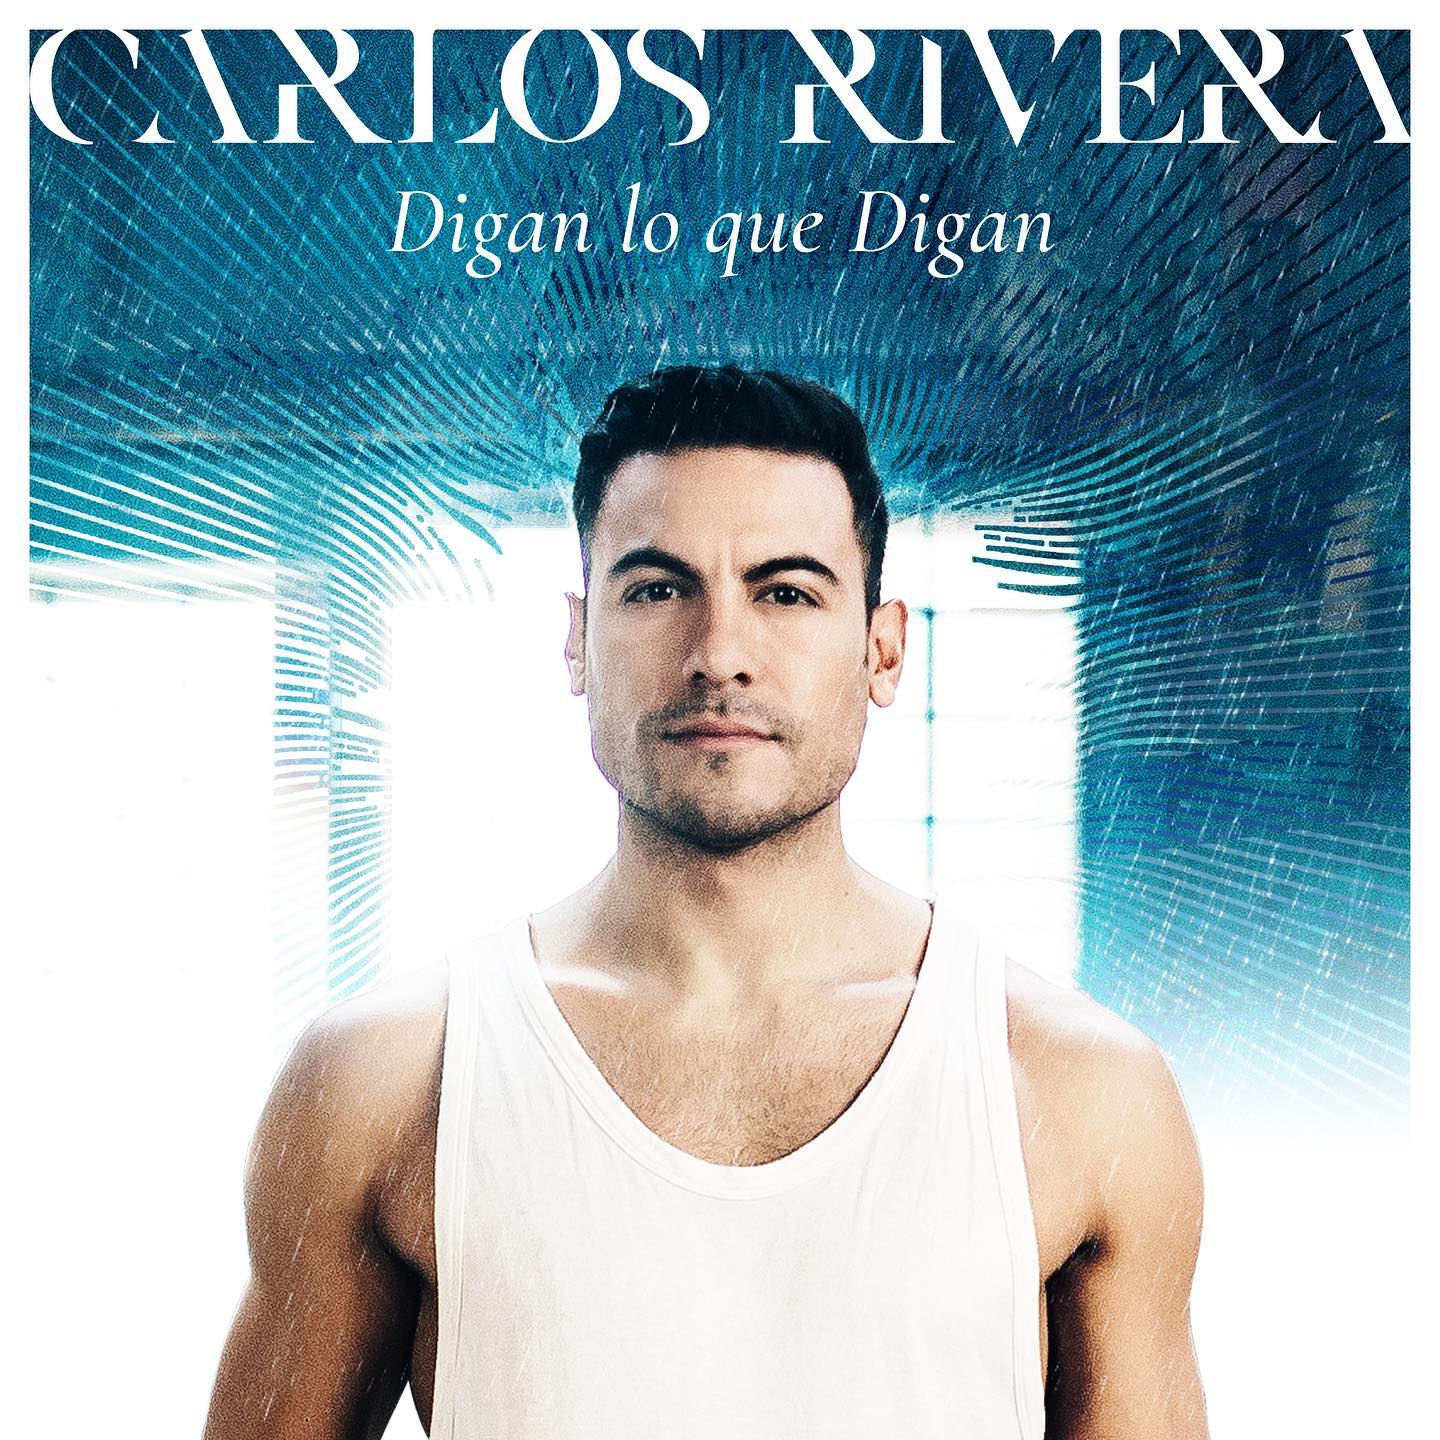 Carlos Rivera interpretó por primera vez en vivo “Digan lo que digan”, su nuevo sencillo